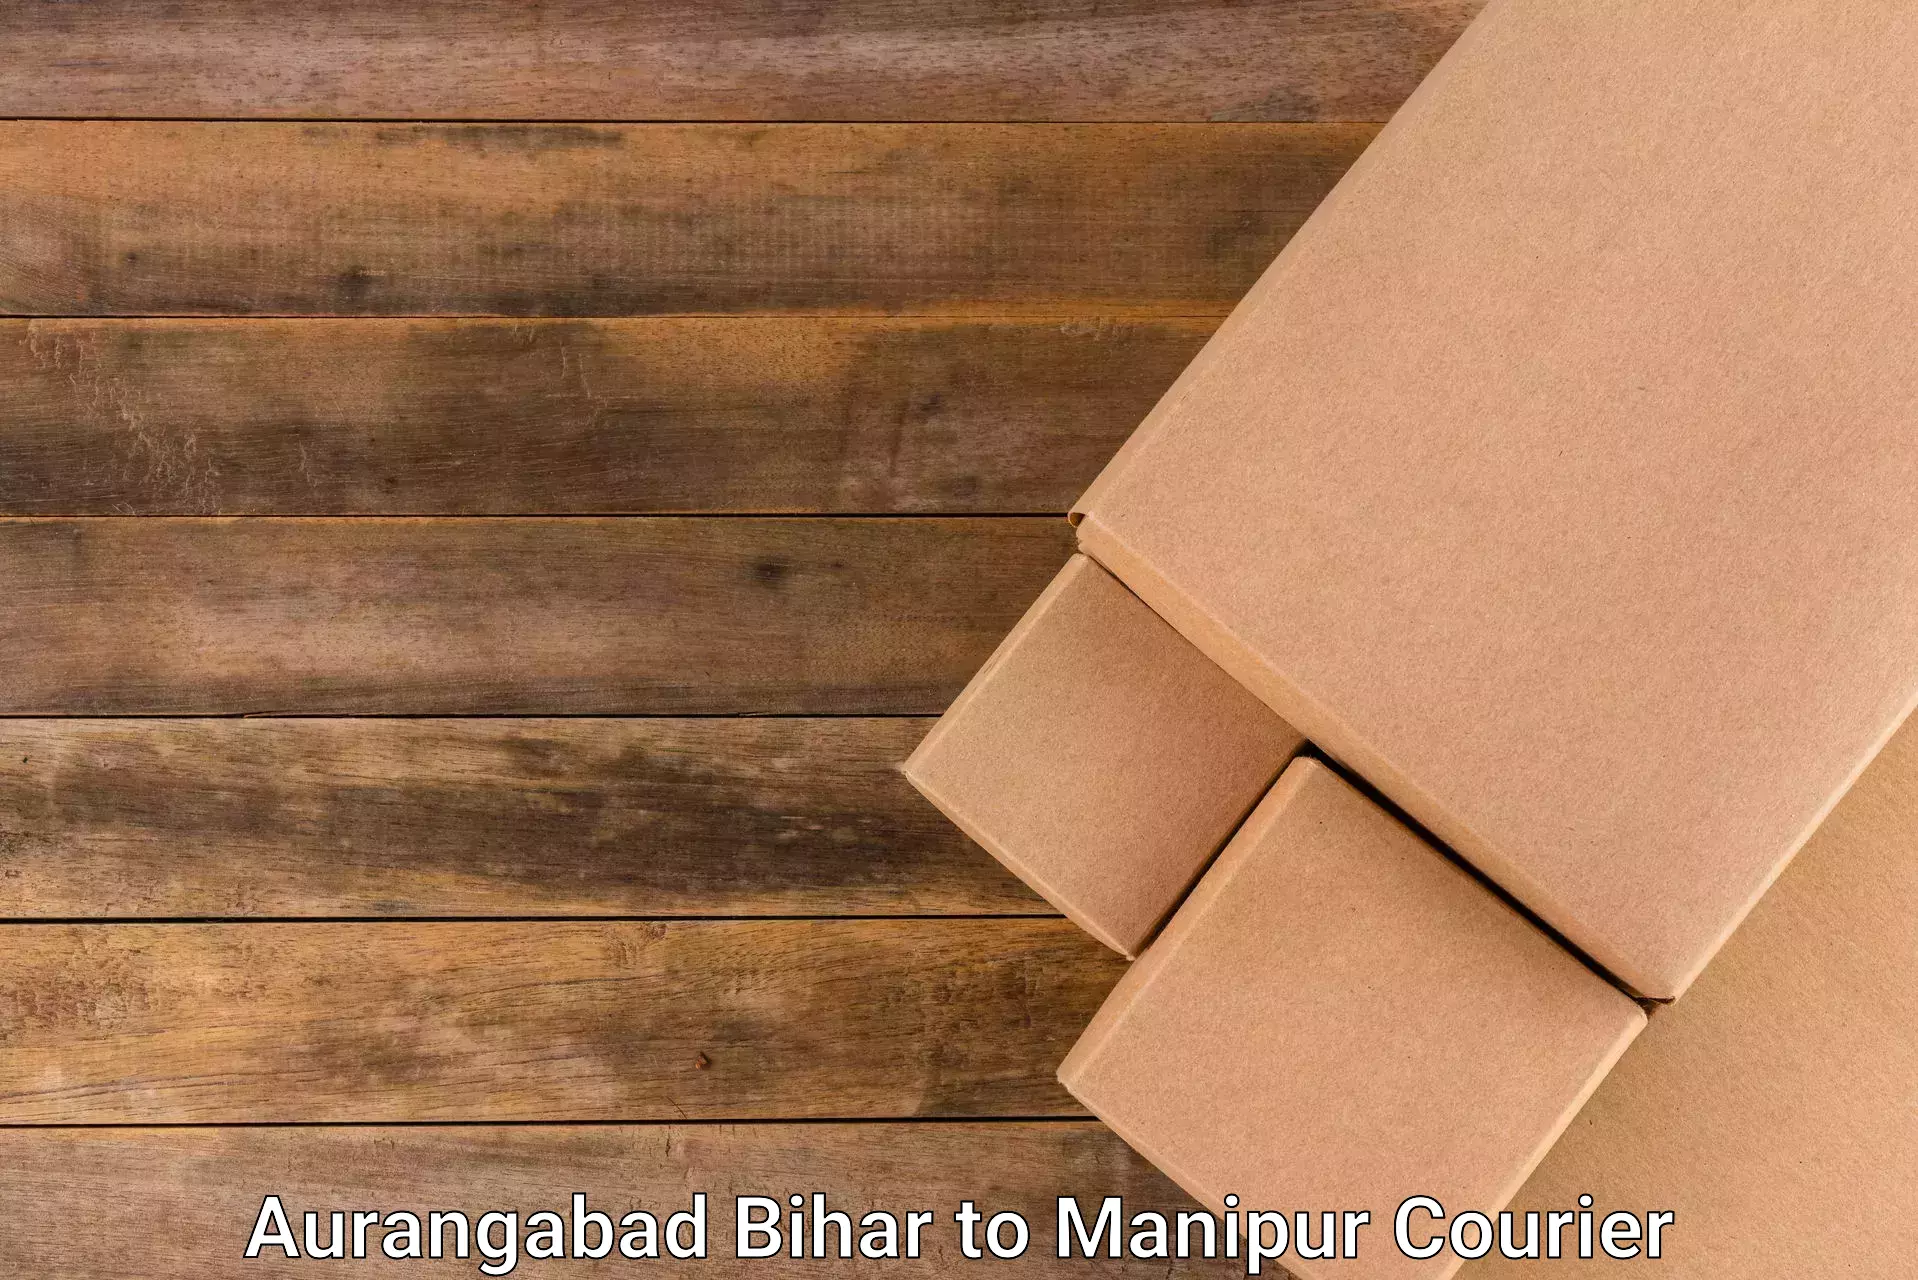 Modern delivery methods Aurangabad Bihar to Chandel